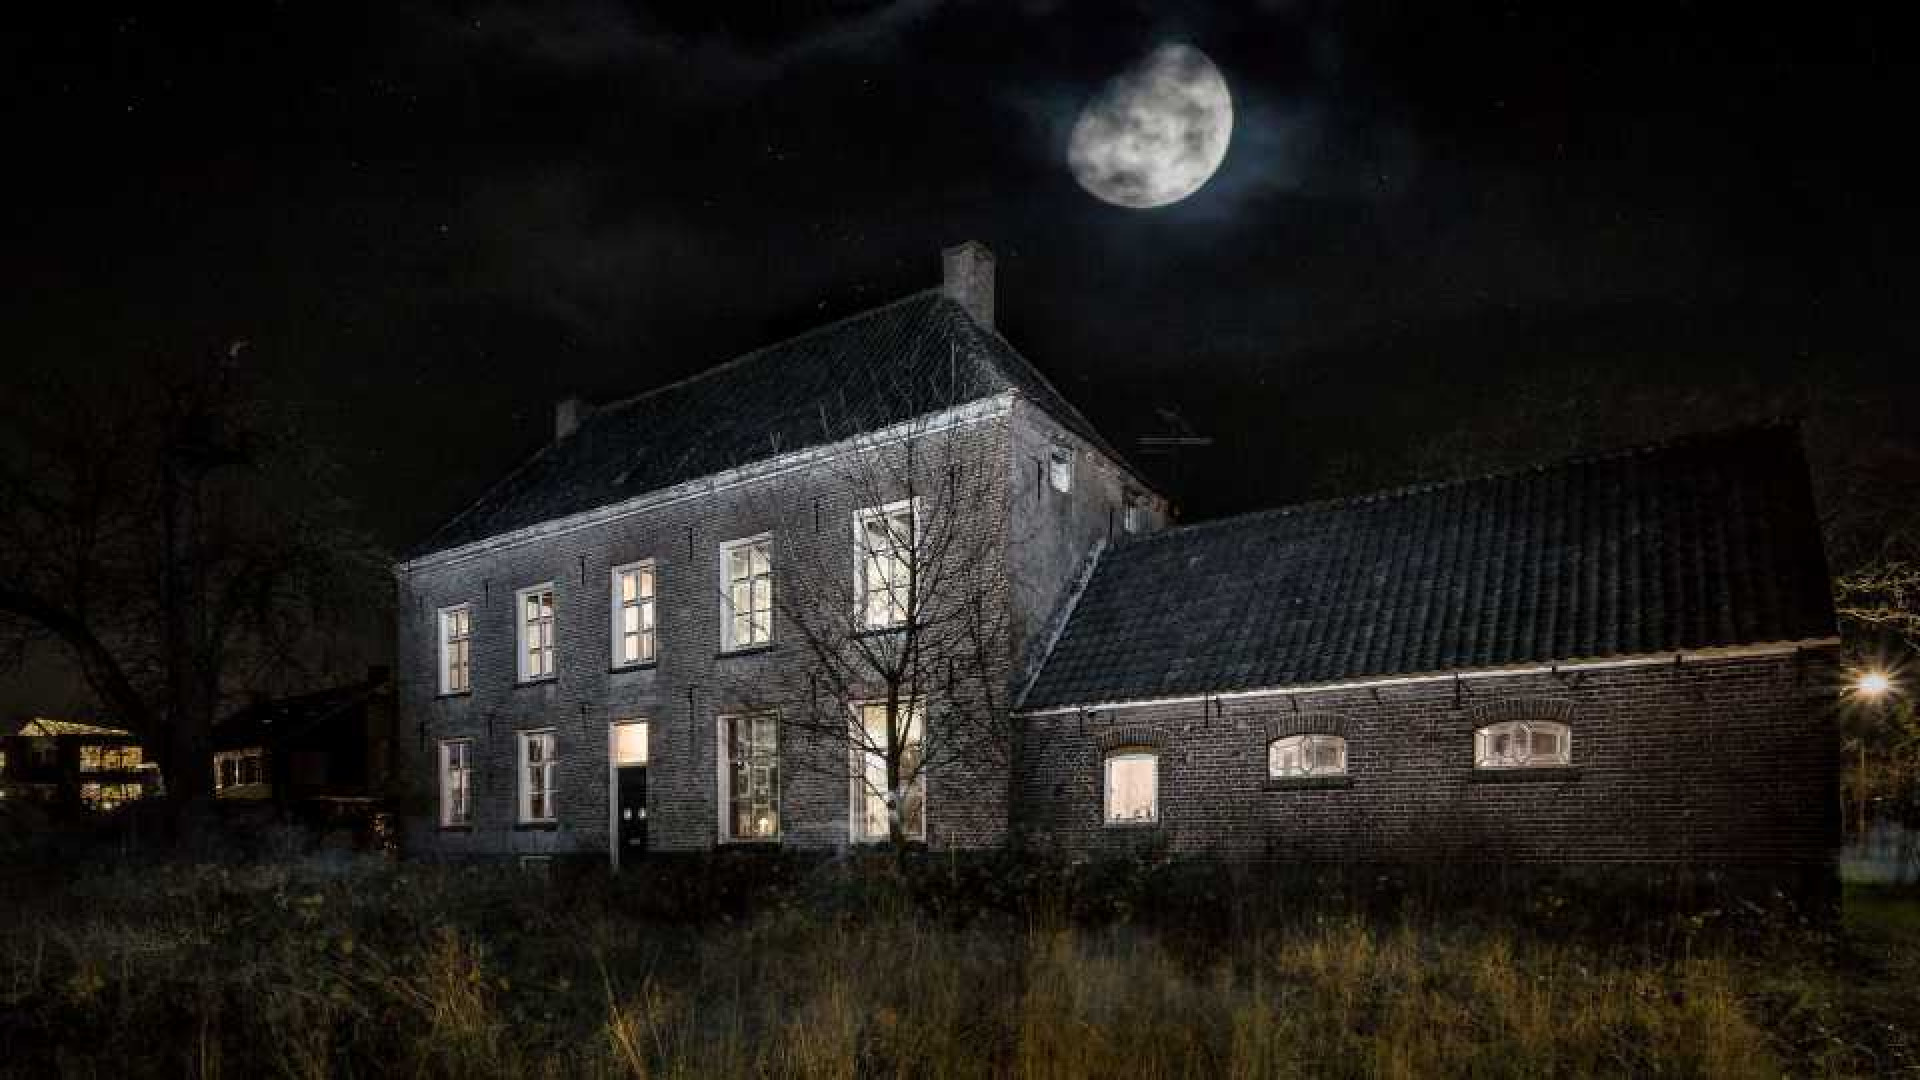 Spookhuis Johan Vlemmix eindelijk verkocht. Zie foto's